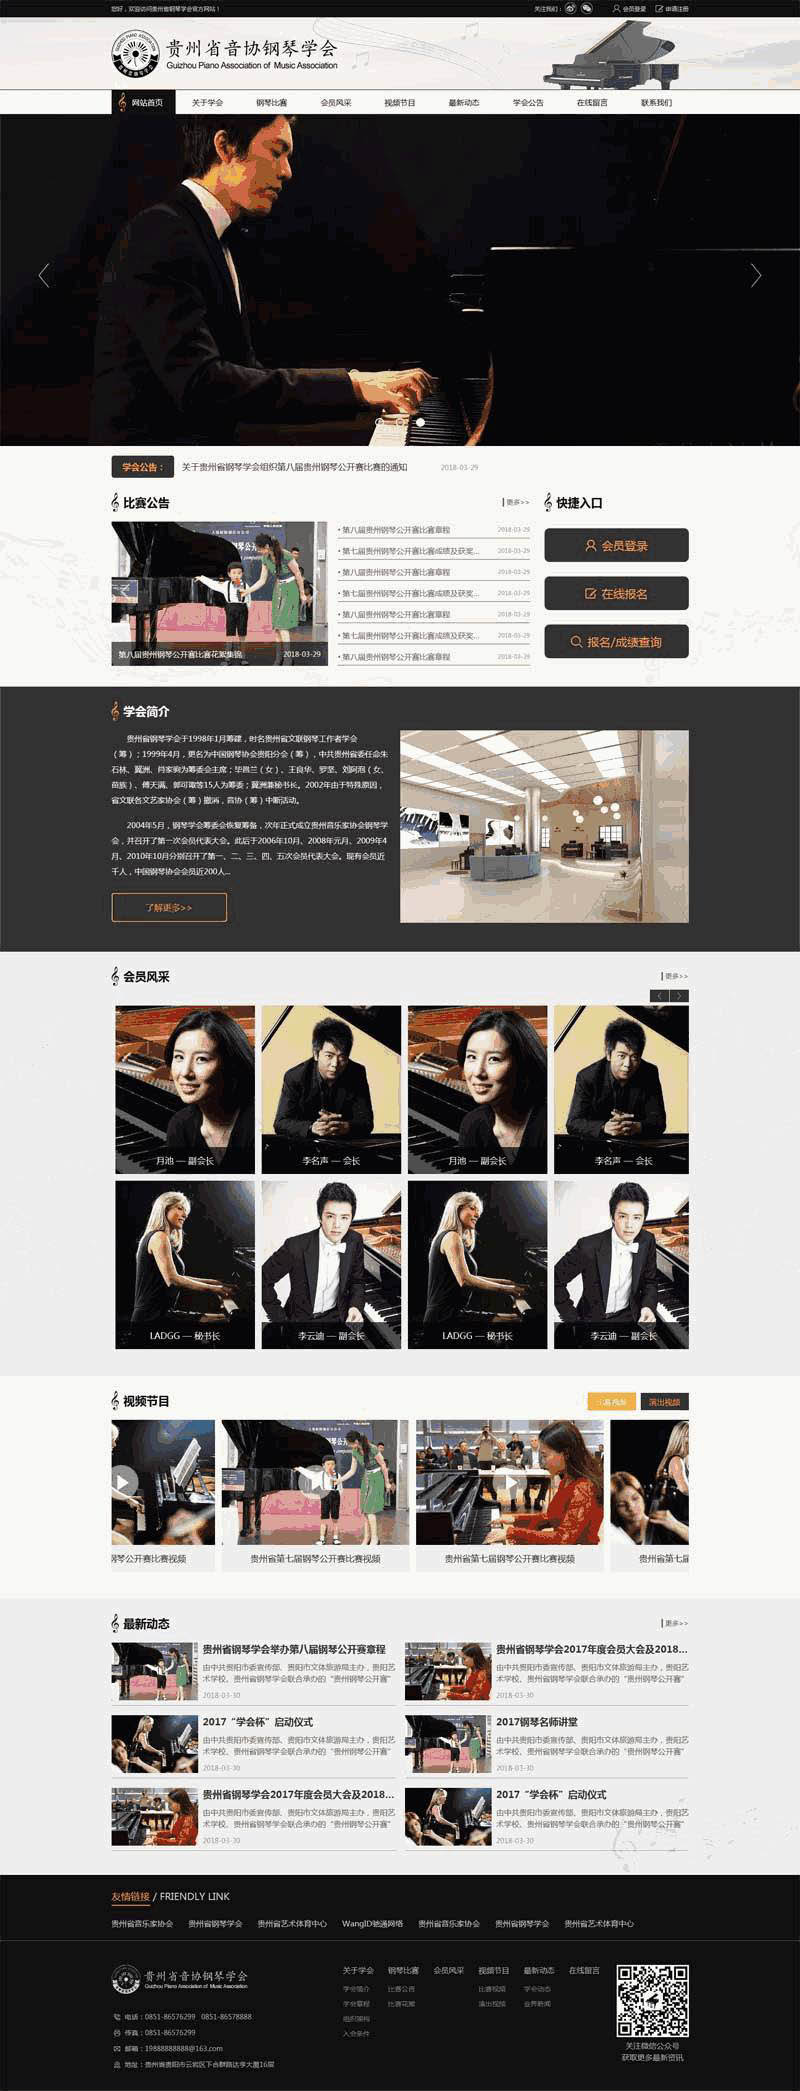 黑色音协钢琴学会官方网站WordPress模板带手机端演示图